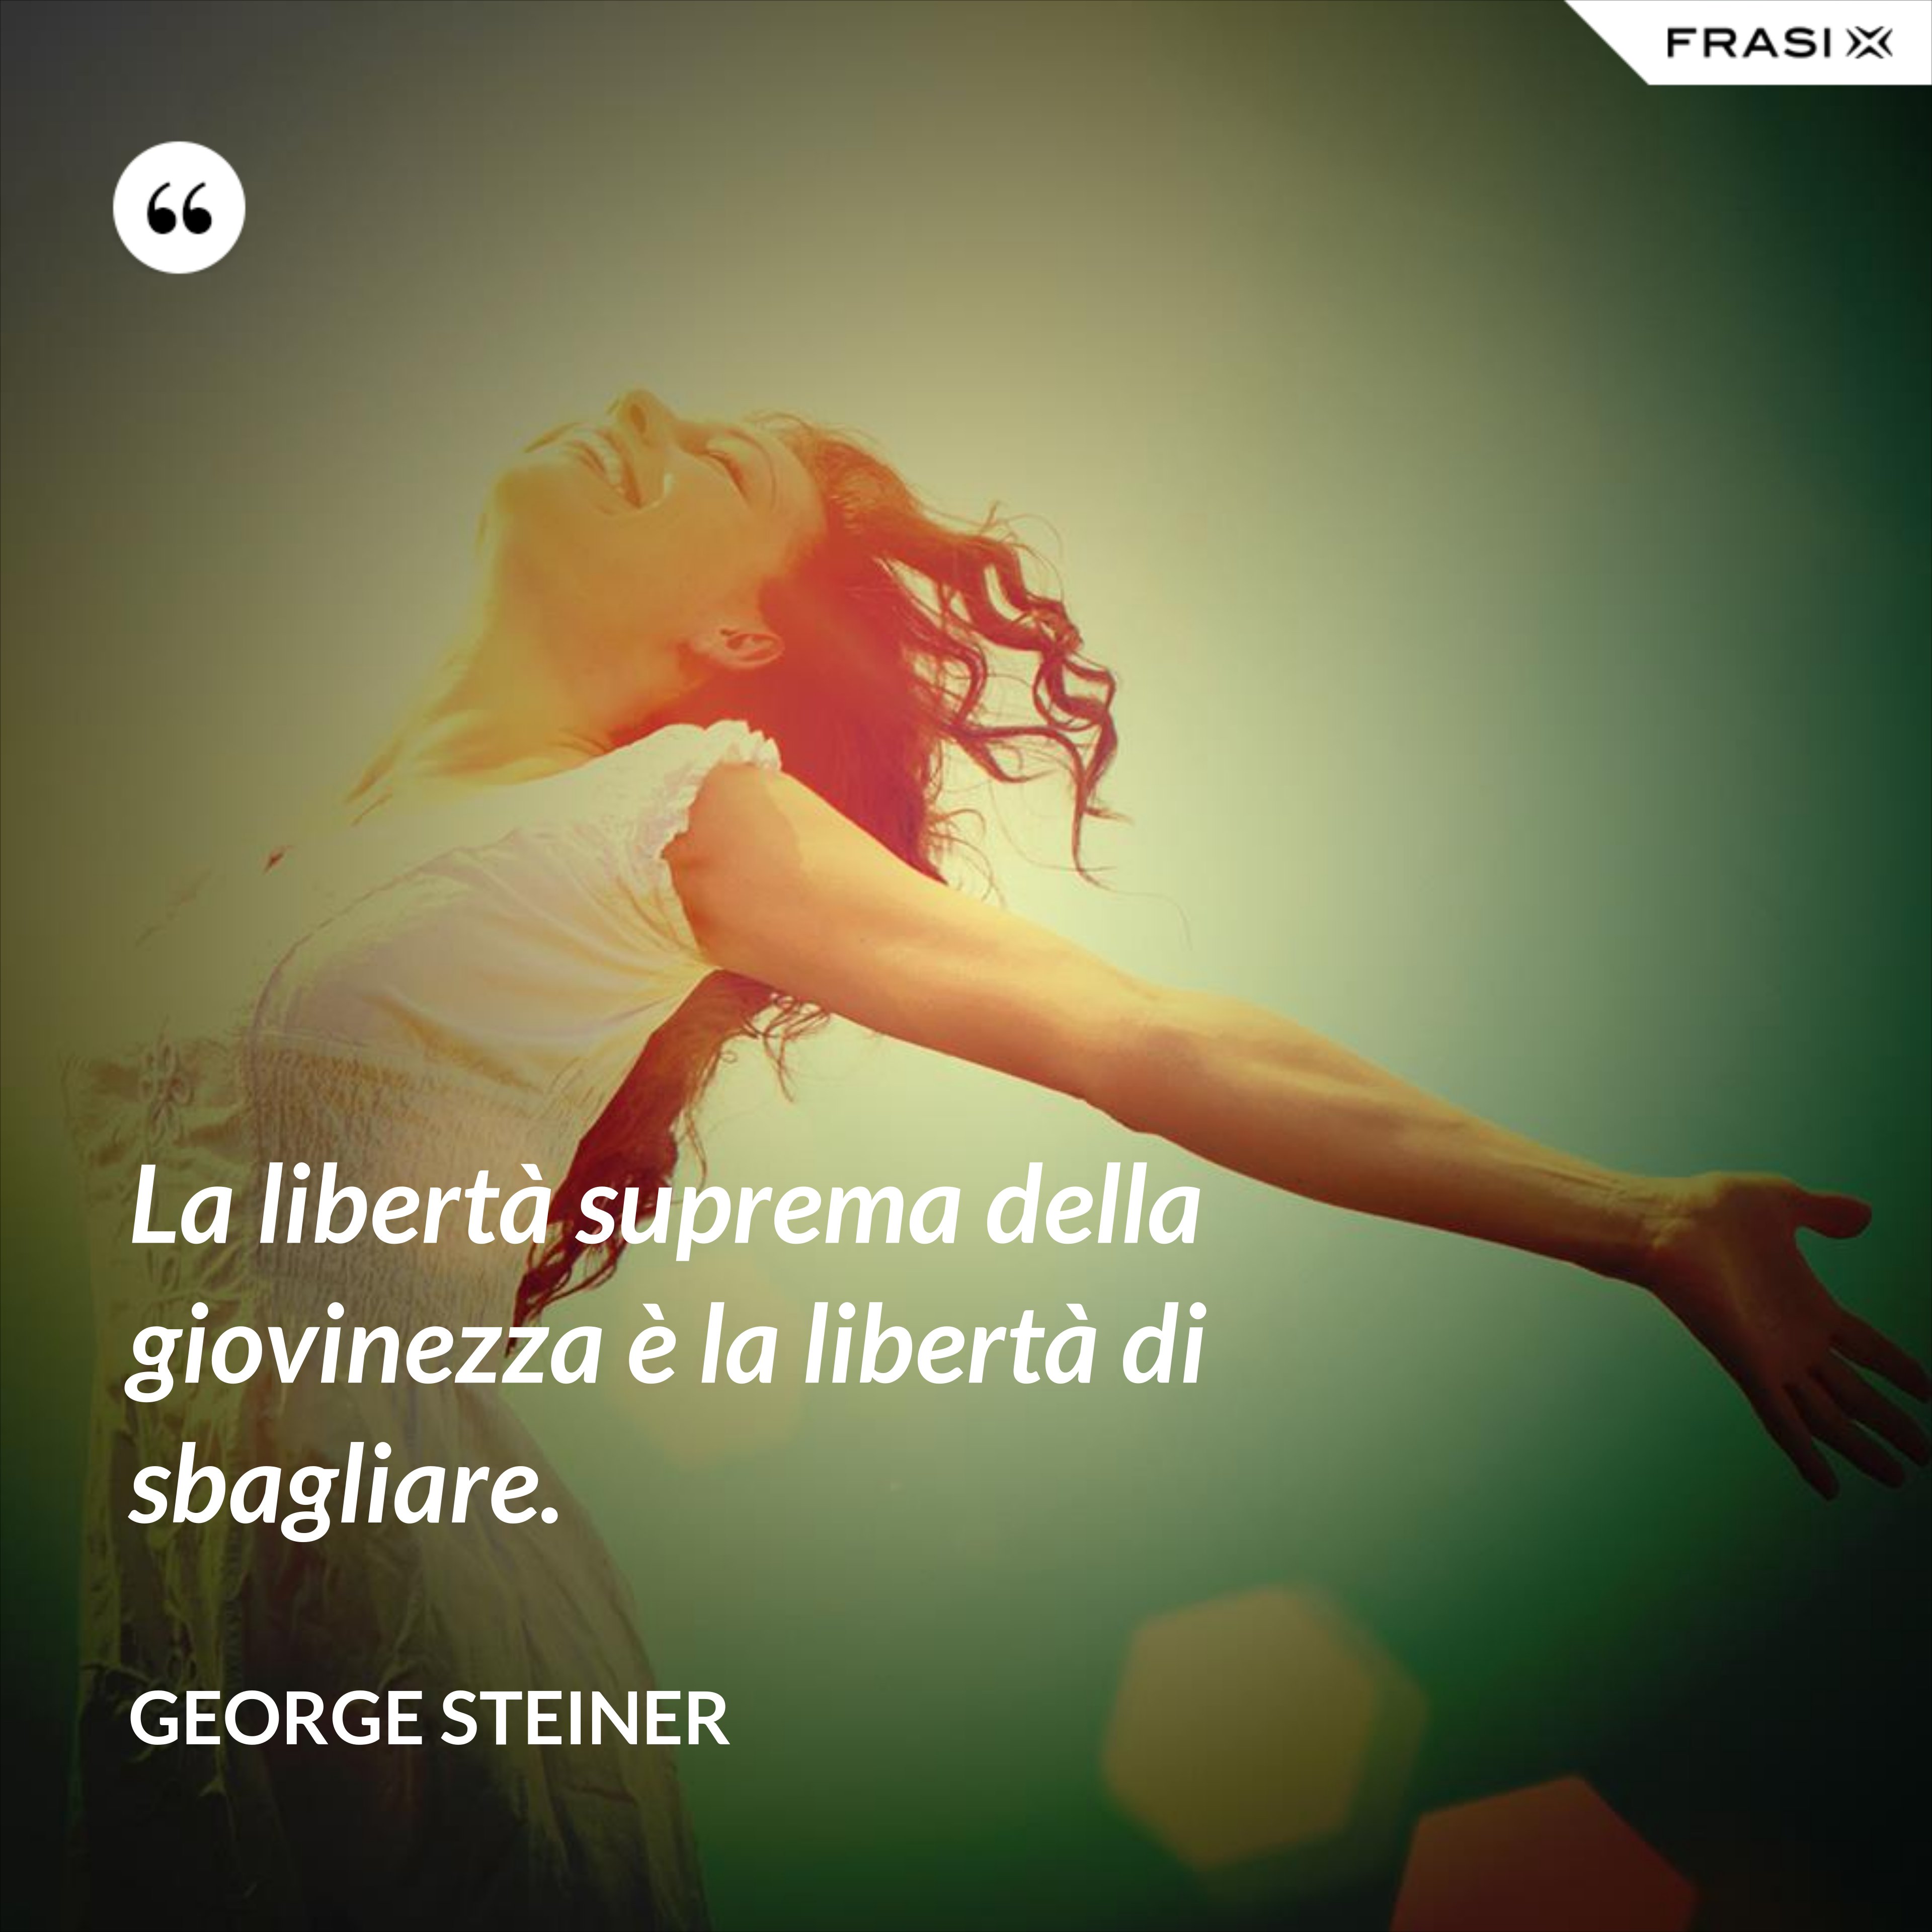 La libertà suprema della giovinezza è la libertà di sbagliare. - George Steiner